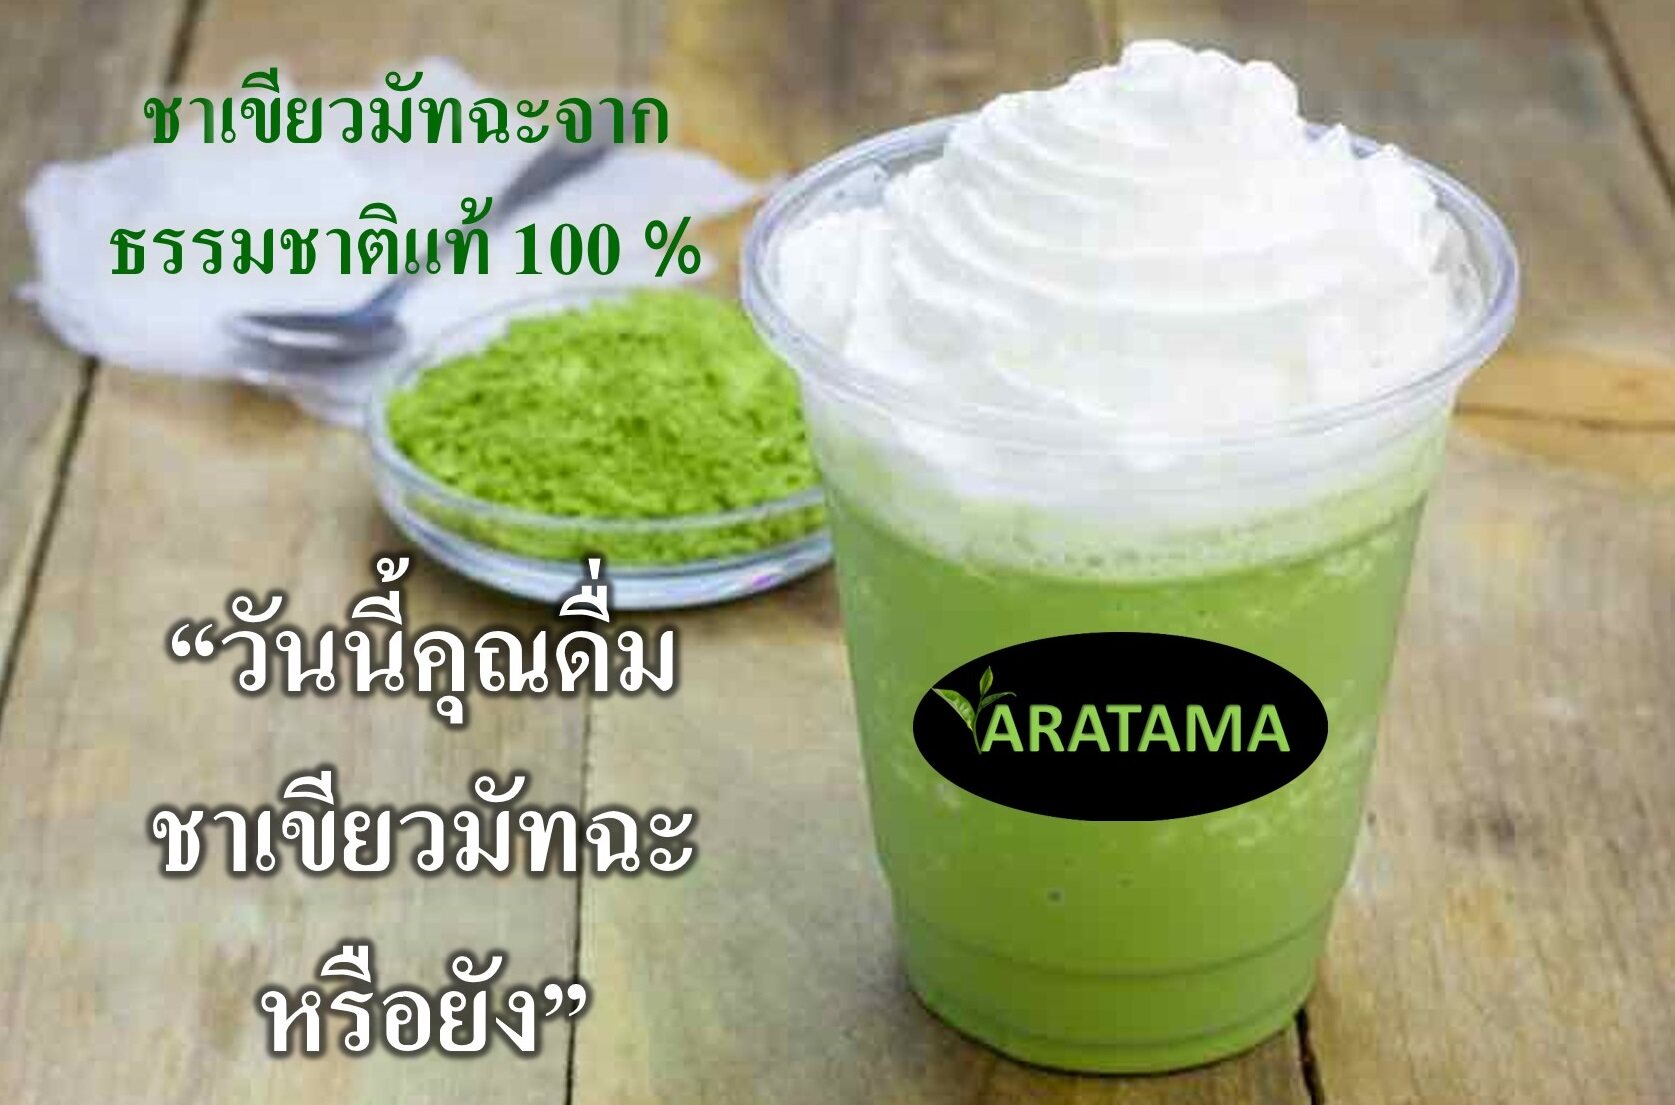 (โปรเด็ด กดเพิ่มลงในตะกร้า 3 ชิ้น รับของแถมฟรี) ชาเขียว มัทฉะ (กระปุกแก้ว)  Matcha 100 % ARATAMA (60 g.) คลีน คีโตทานได้  ผงชาเขียว มัชชะ ผง